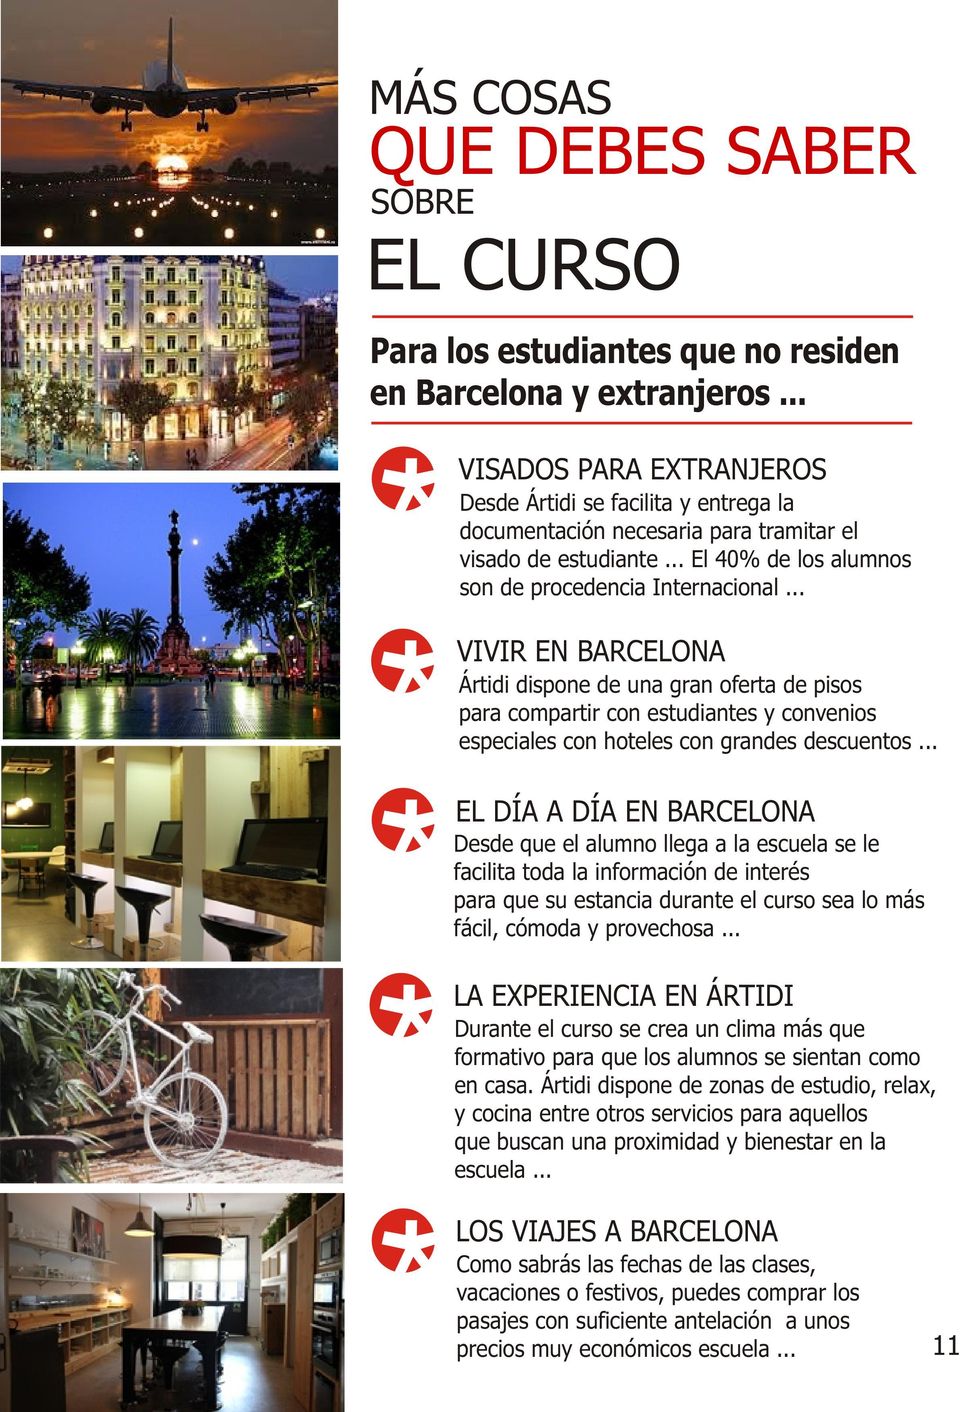 .. VIVIR EN BARCELONA Ártidi dispone de una gran oferta de pisos para compartir con estudiantes y convenios especiales con hoteles con grandes descuentos.